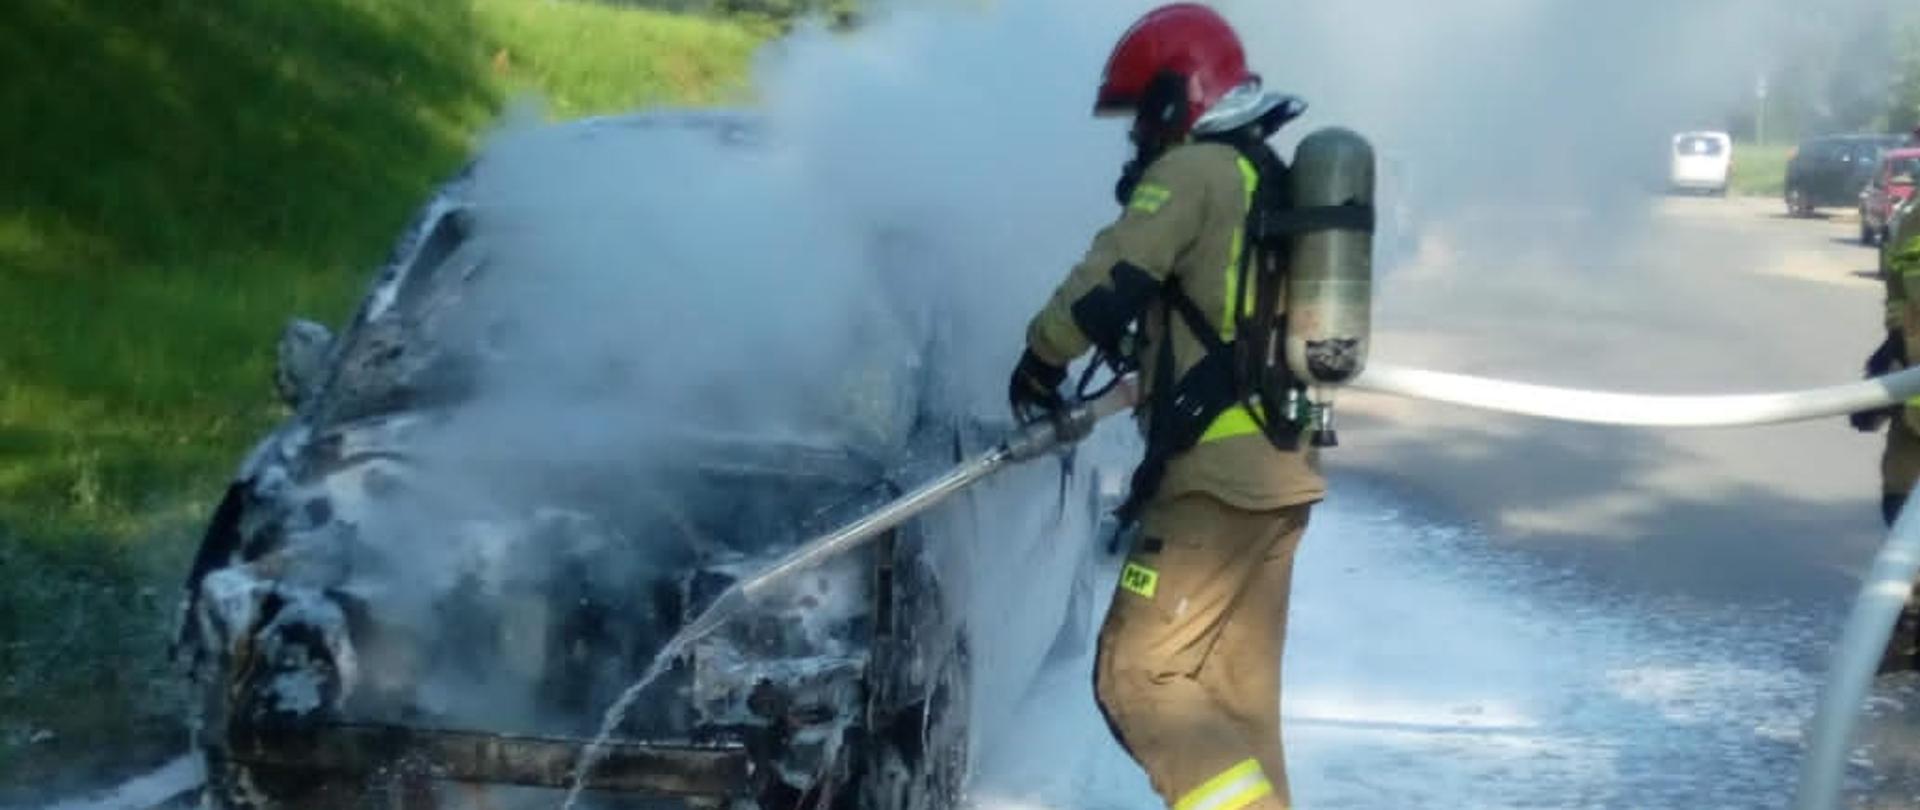 Zdjęcie przedstawia samochód osobowy, który uległ spaleniu oraz ratownika podczas akcji ratowniczo-gaśniczej.